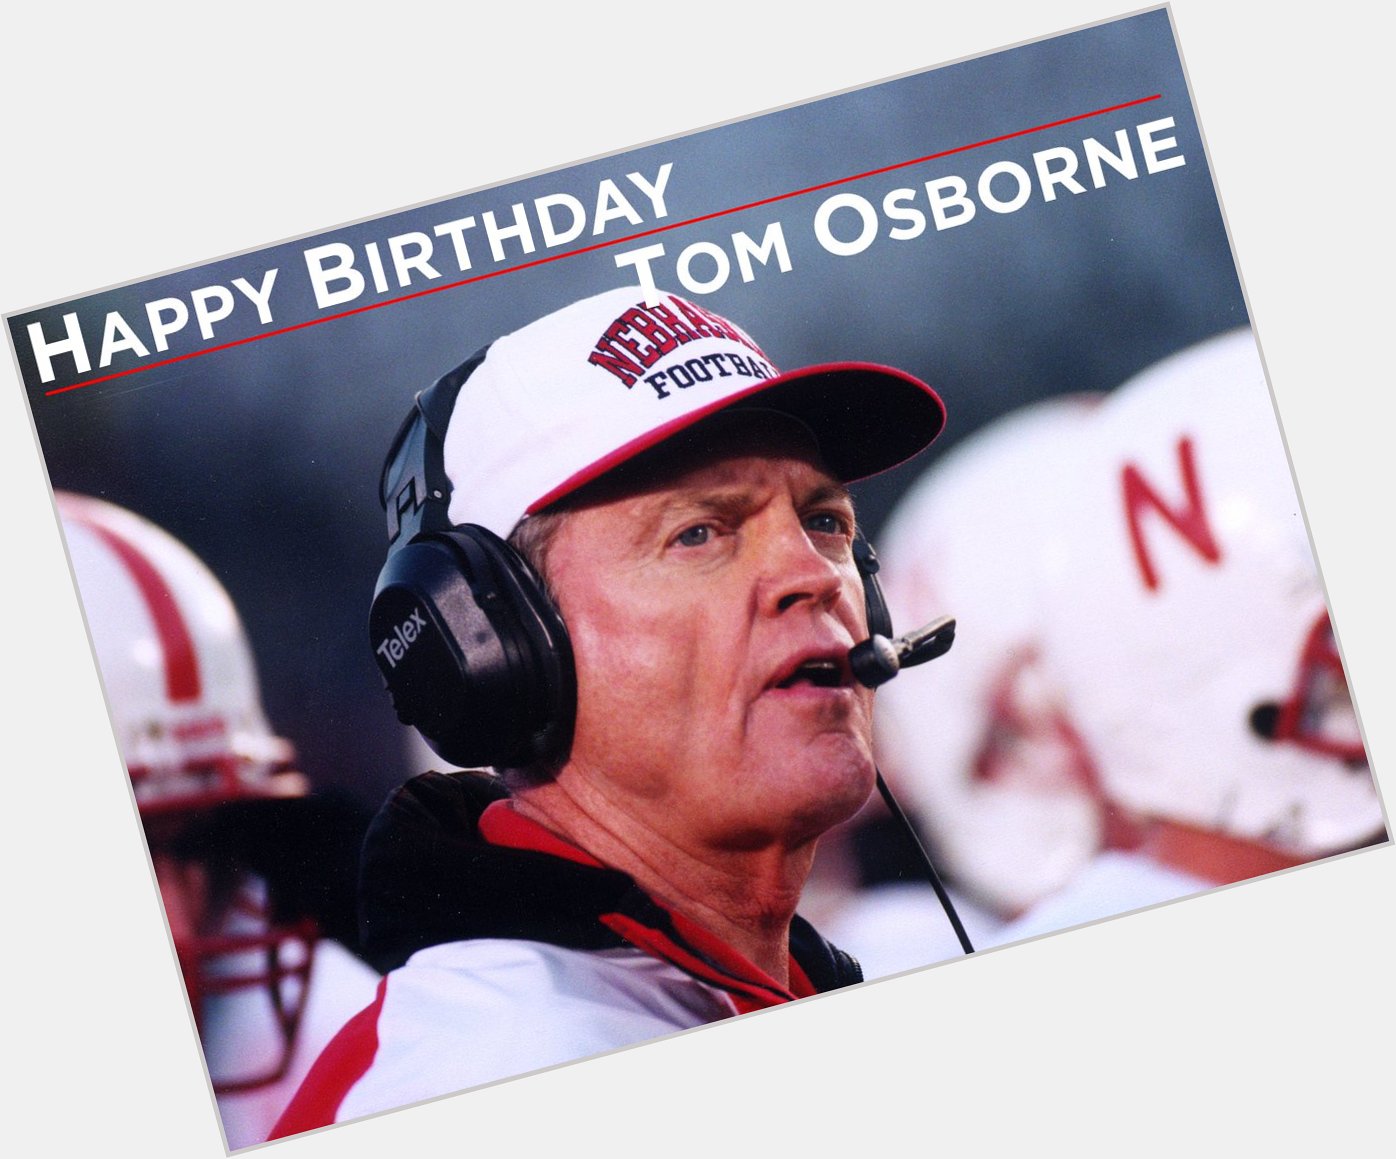 Happy birthday, Tom Osborne!   